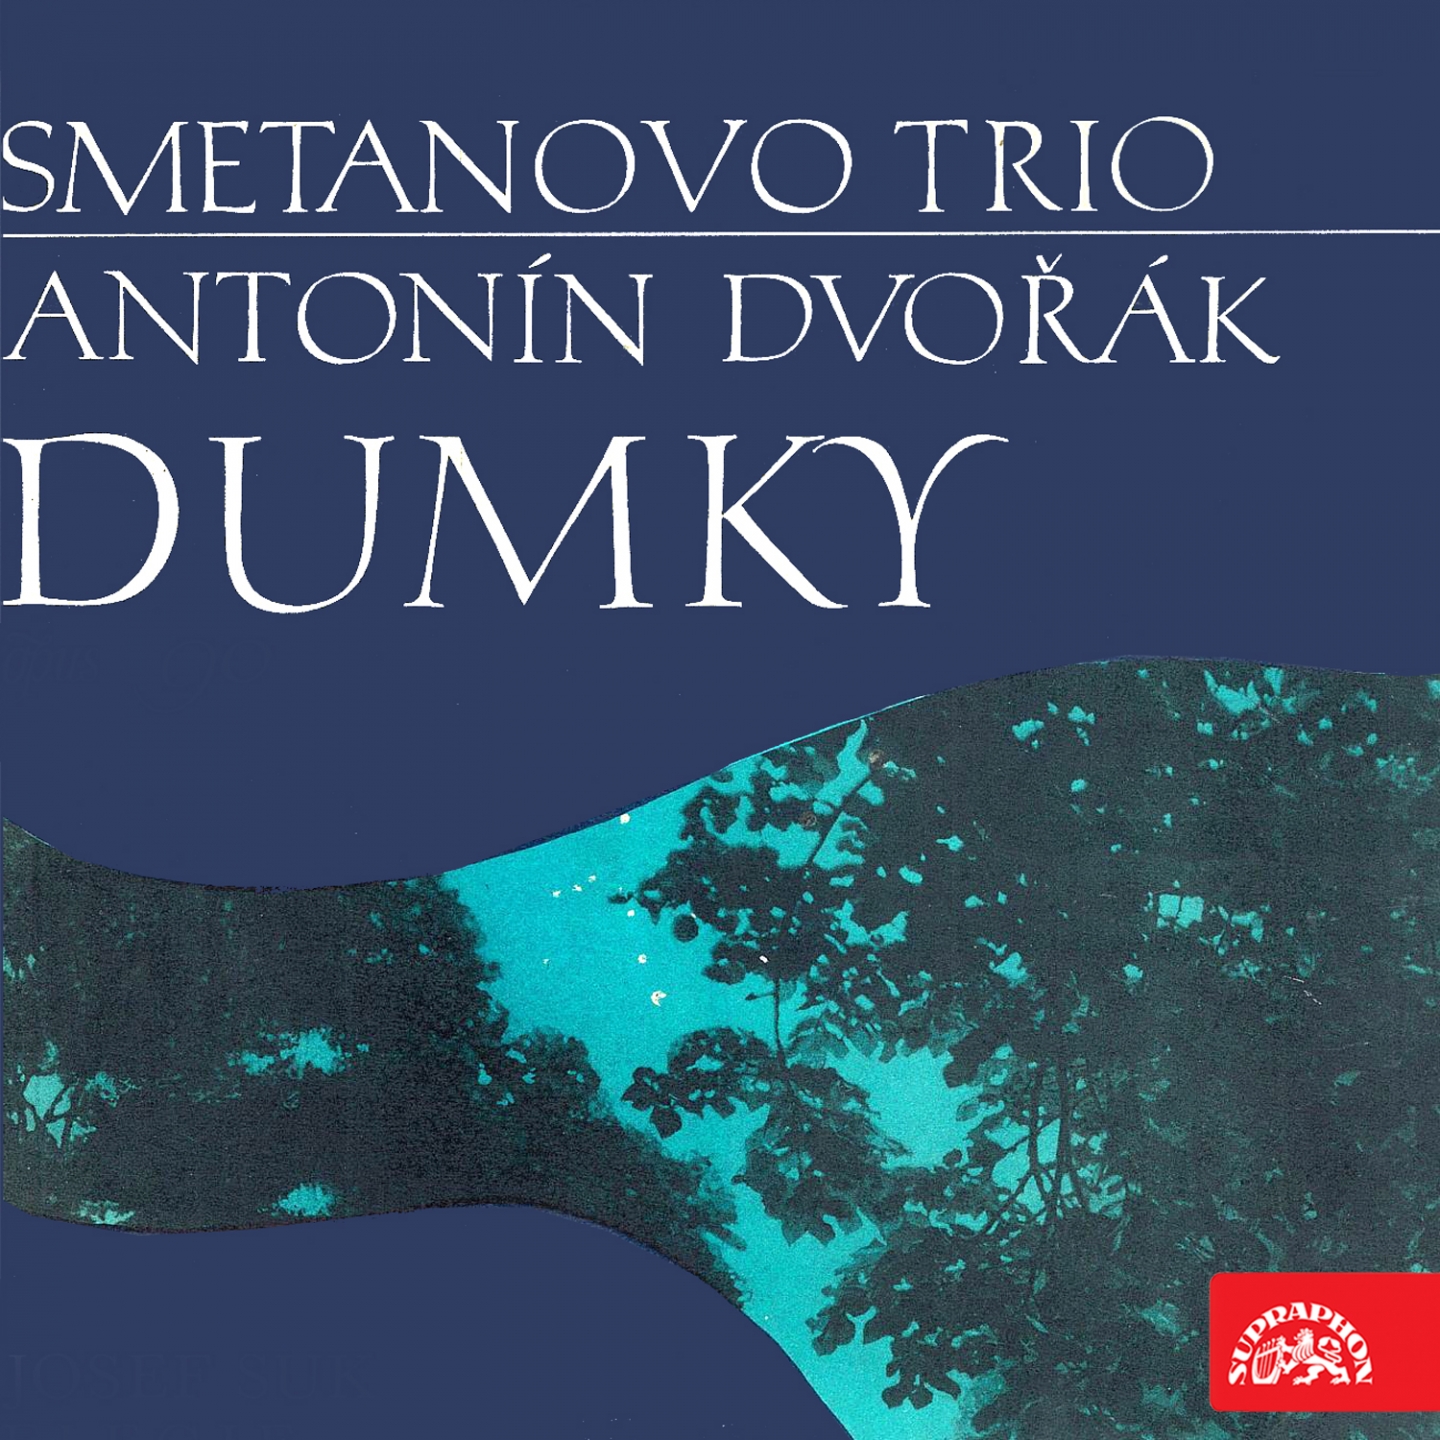 Piano Trio No. 4 in E Minor, Op. 90, B. 166 "Dumky": II. Poco adagio